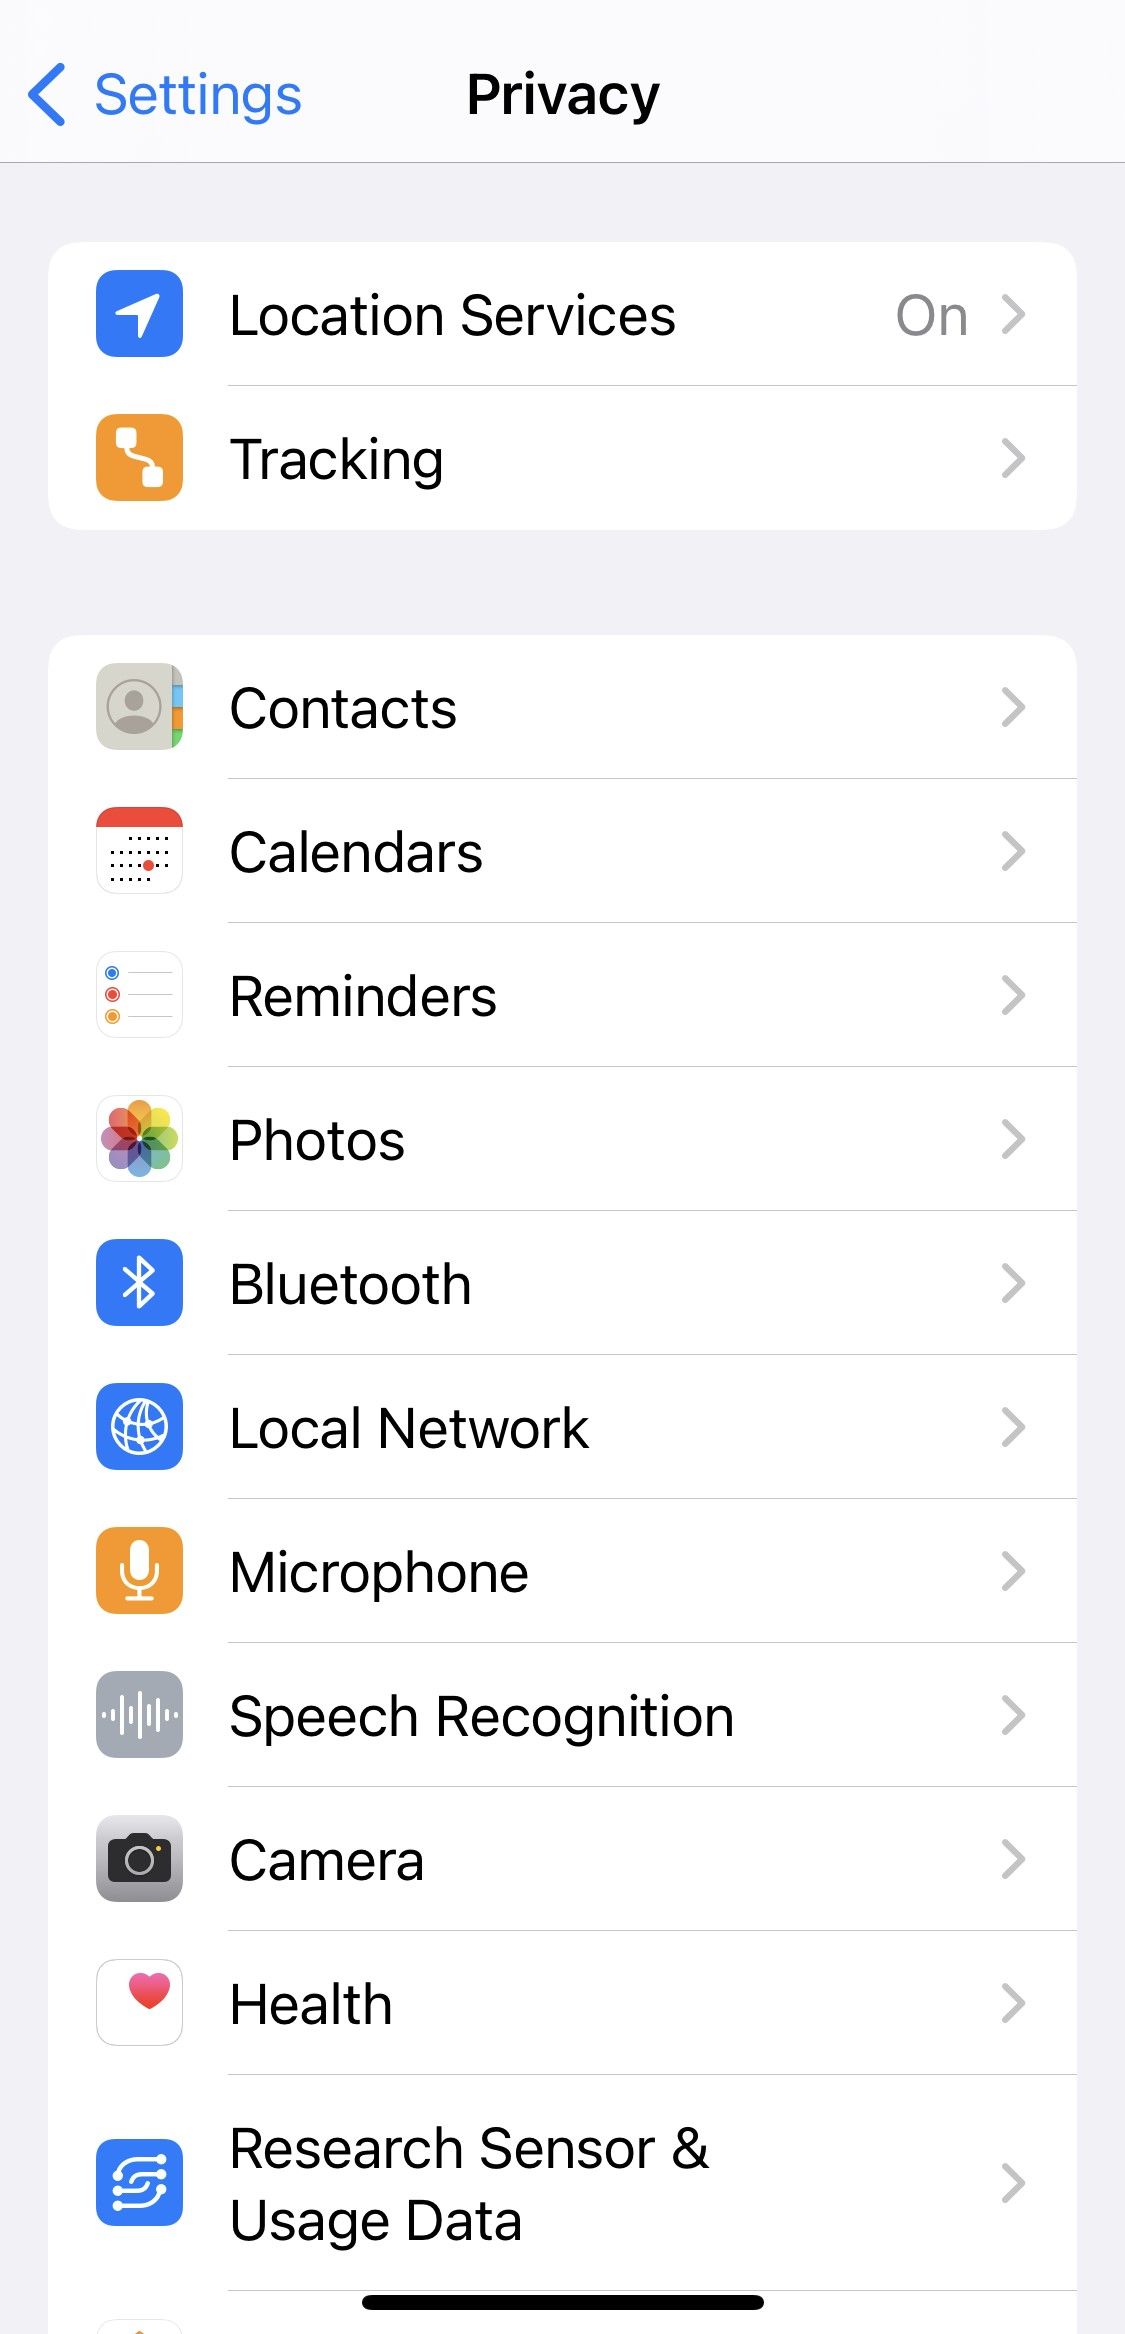 Cliquer sur l'option Contacts dans les paramètres de confidentialité pour iOS